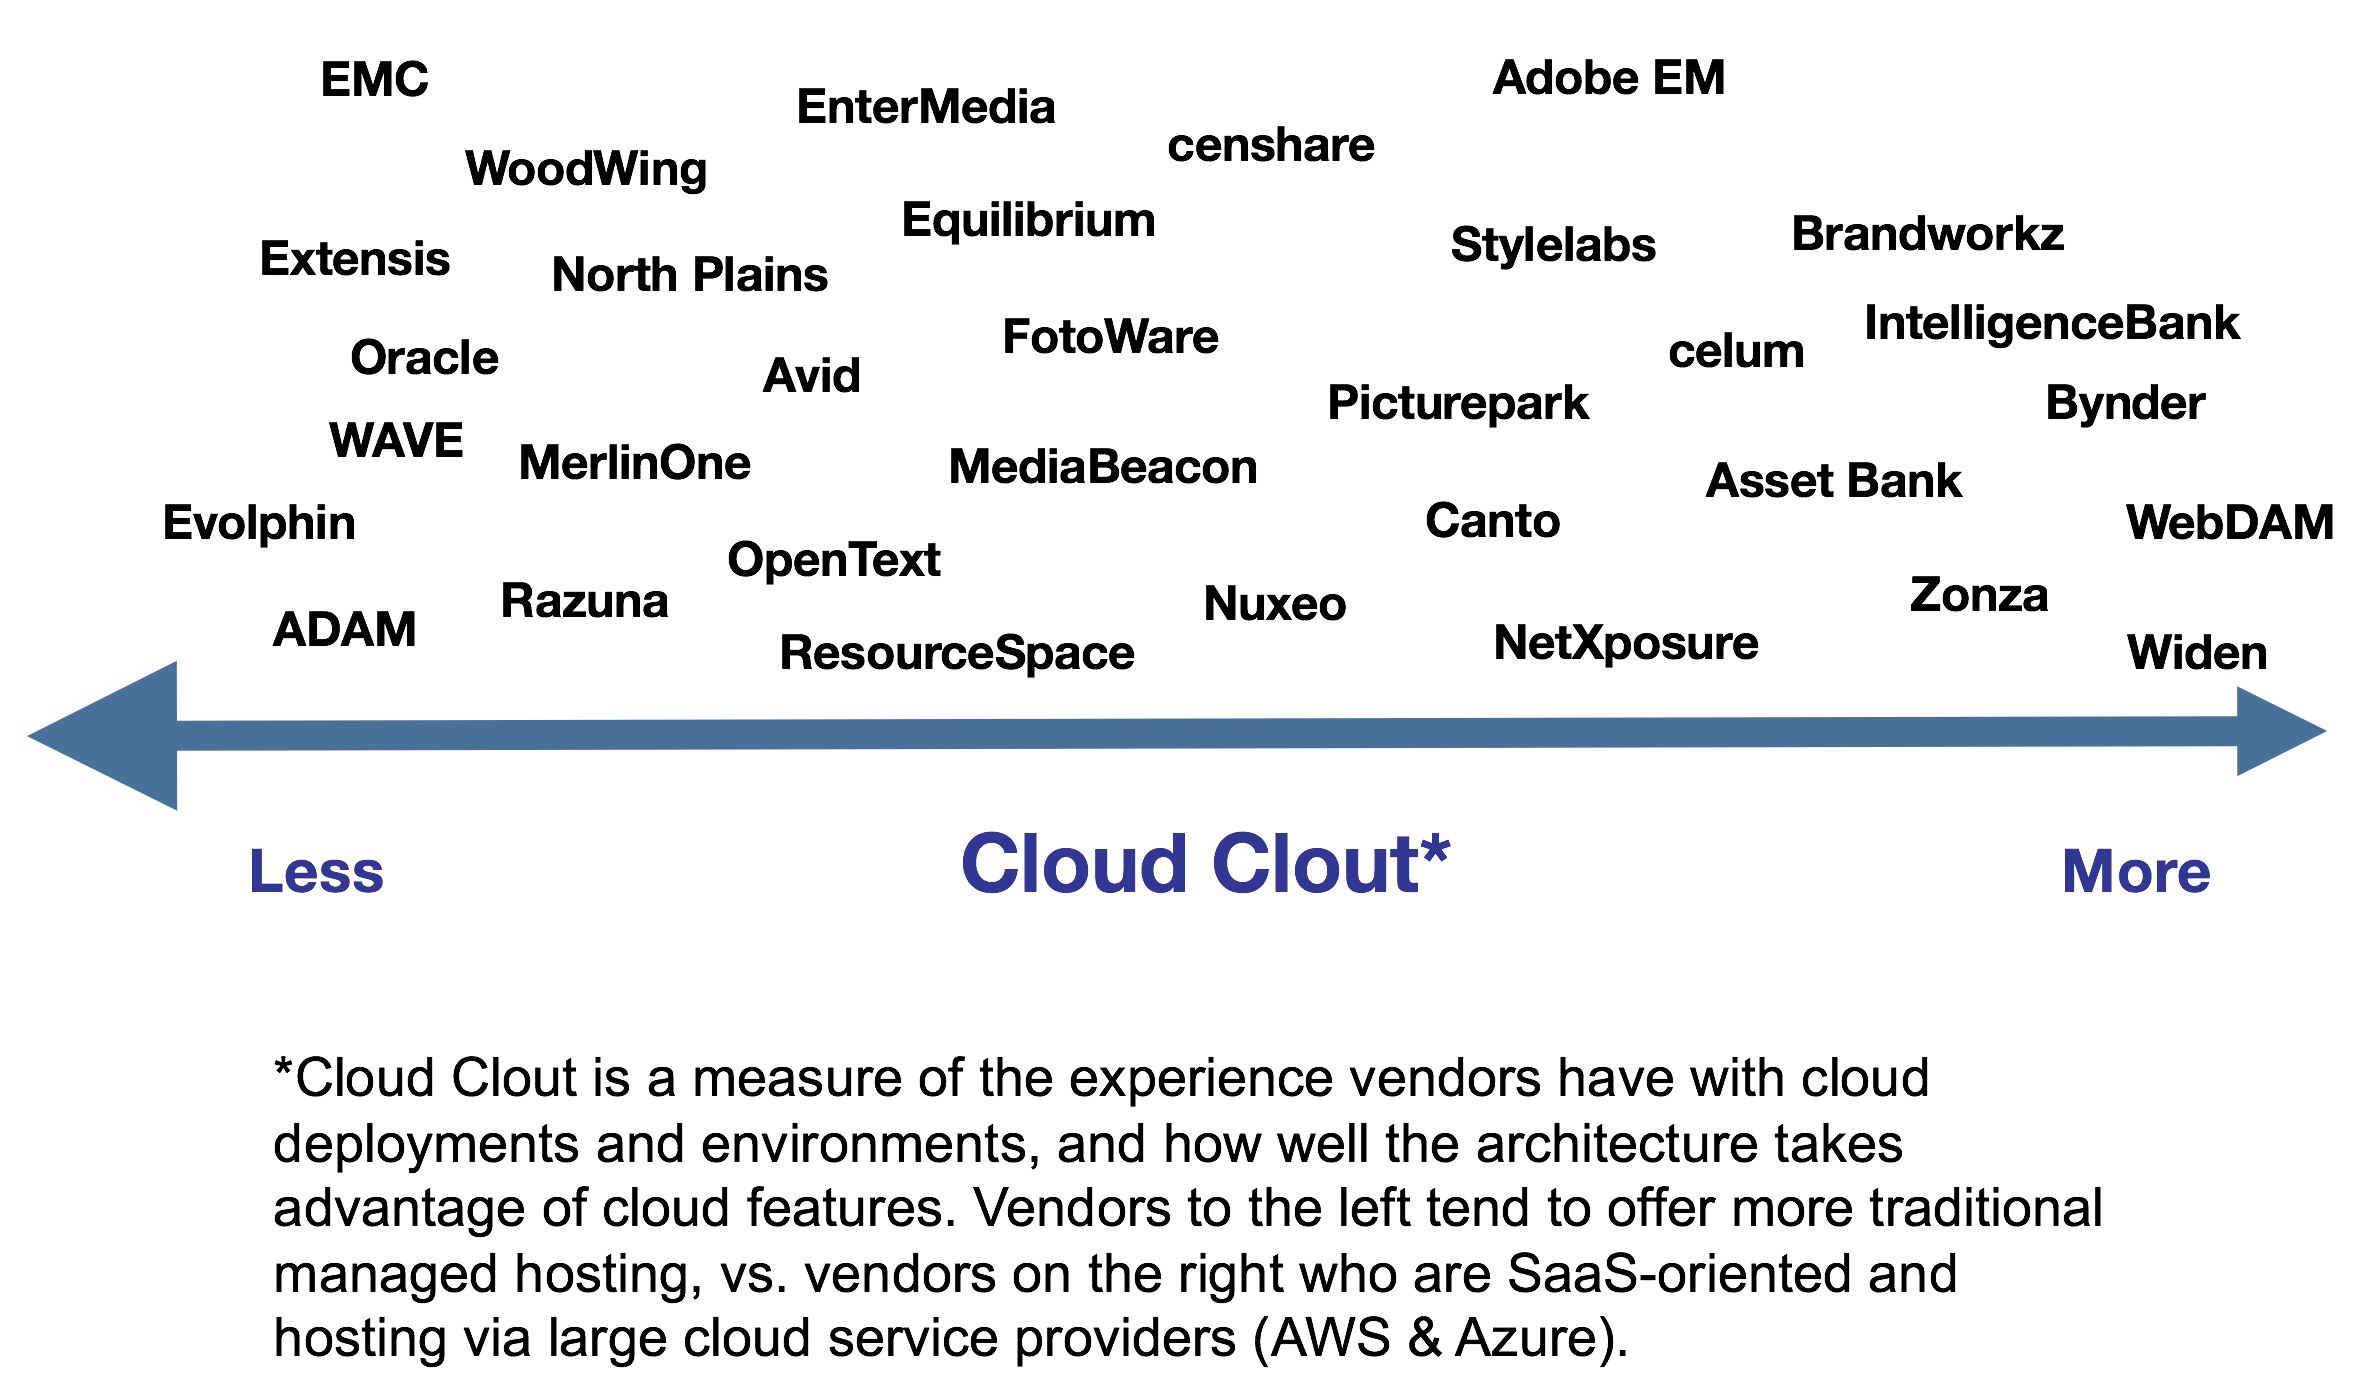 DAM Cloud Clout Assessment